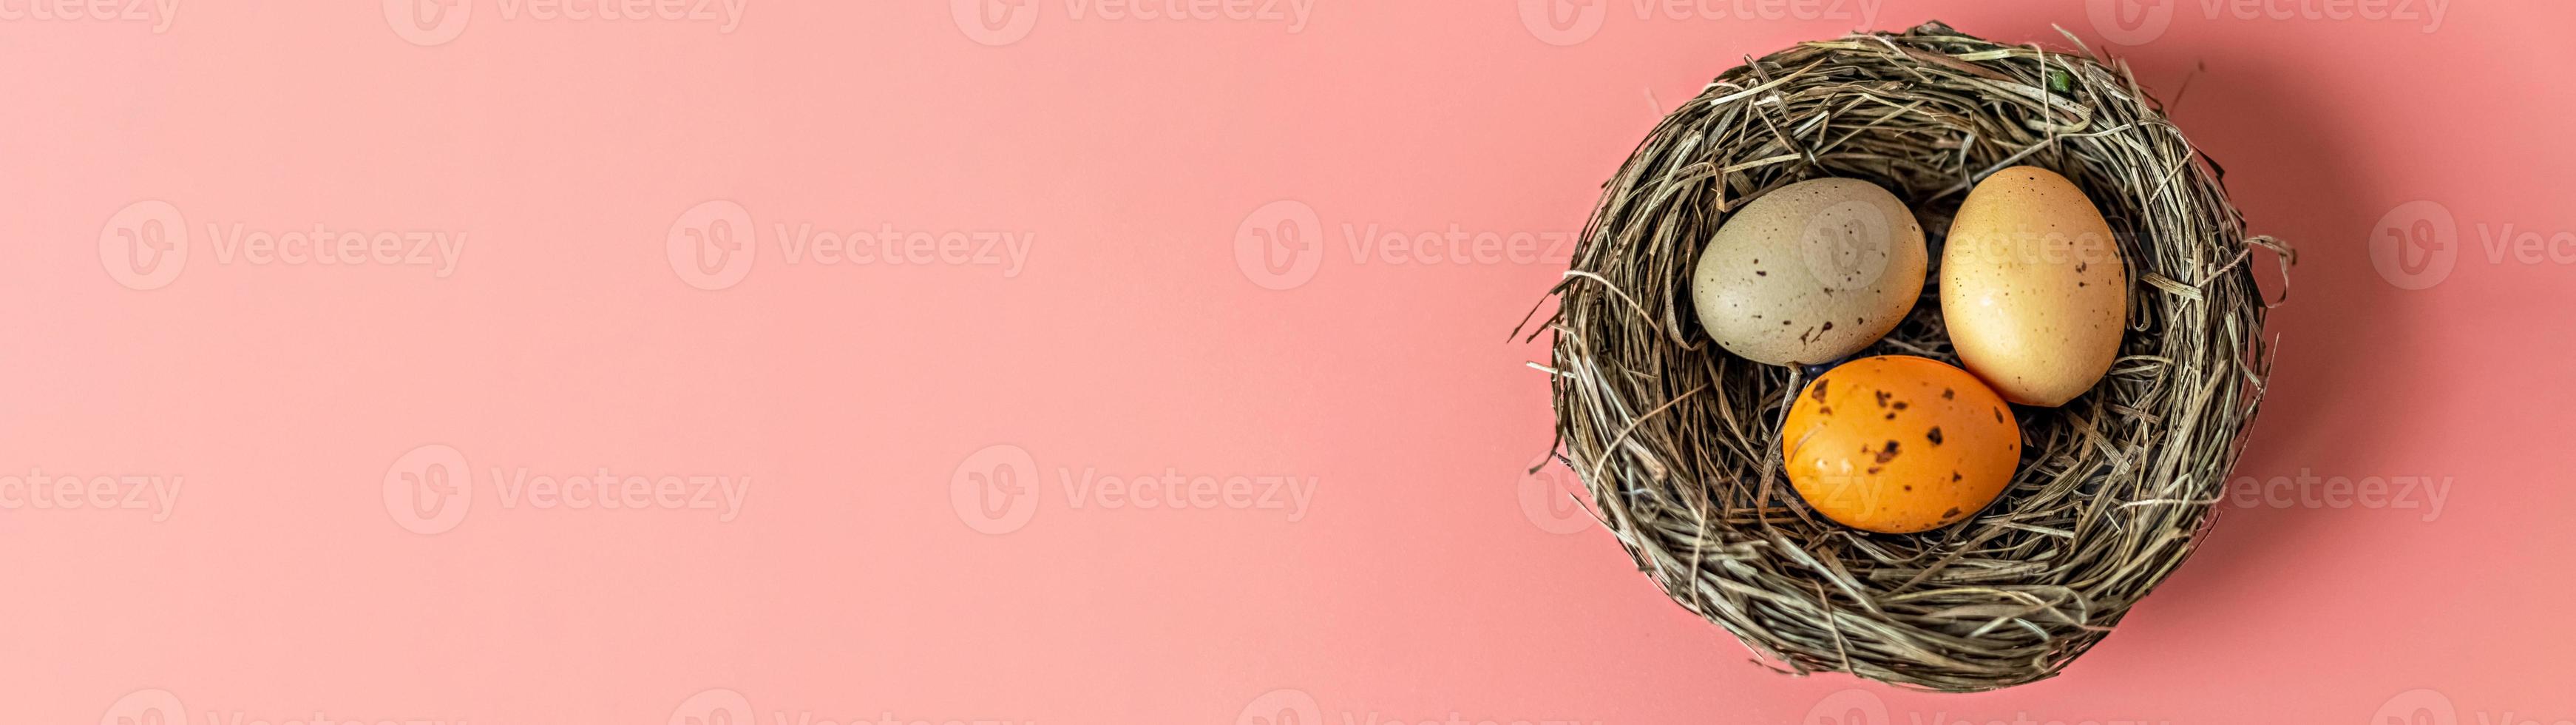 huevos de pascua en un nido natural con huevos de aves sobre un fondo rosa. vista desde arriba. foto